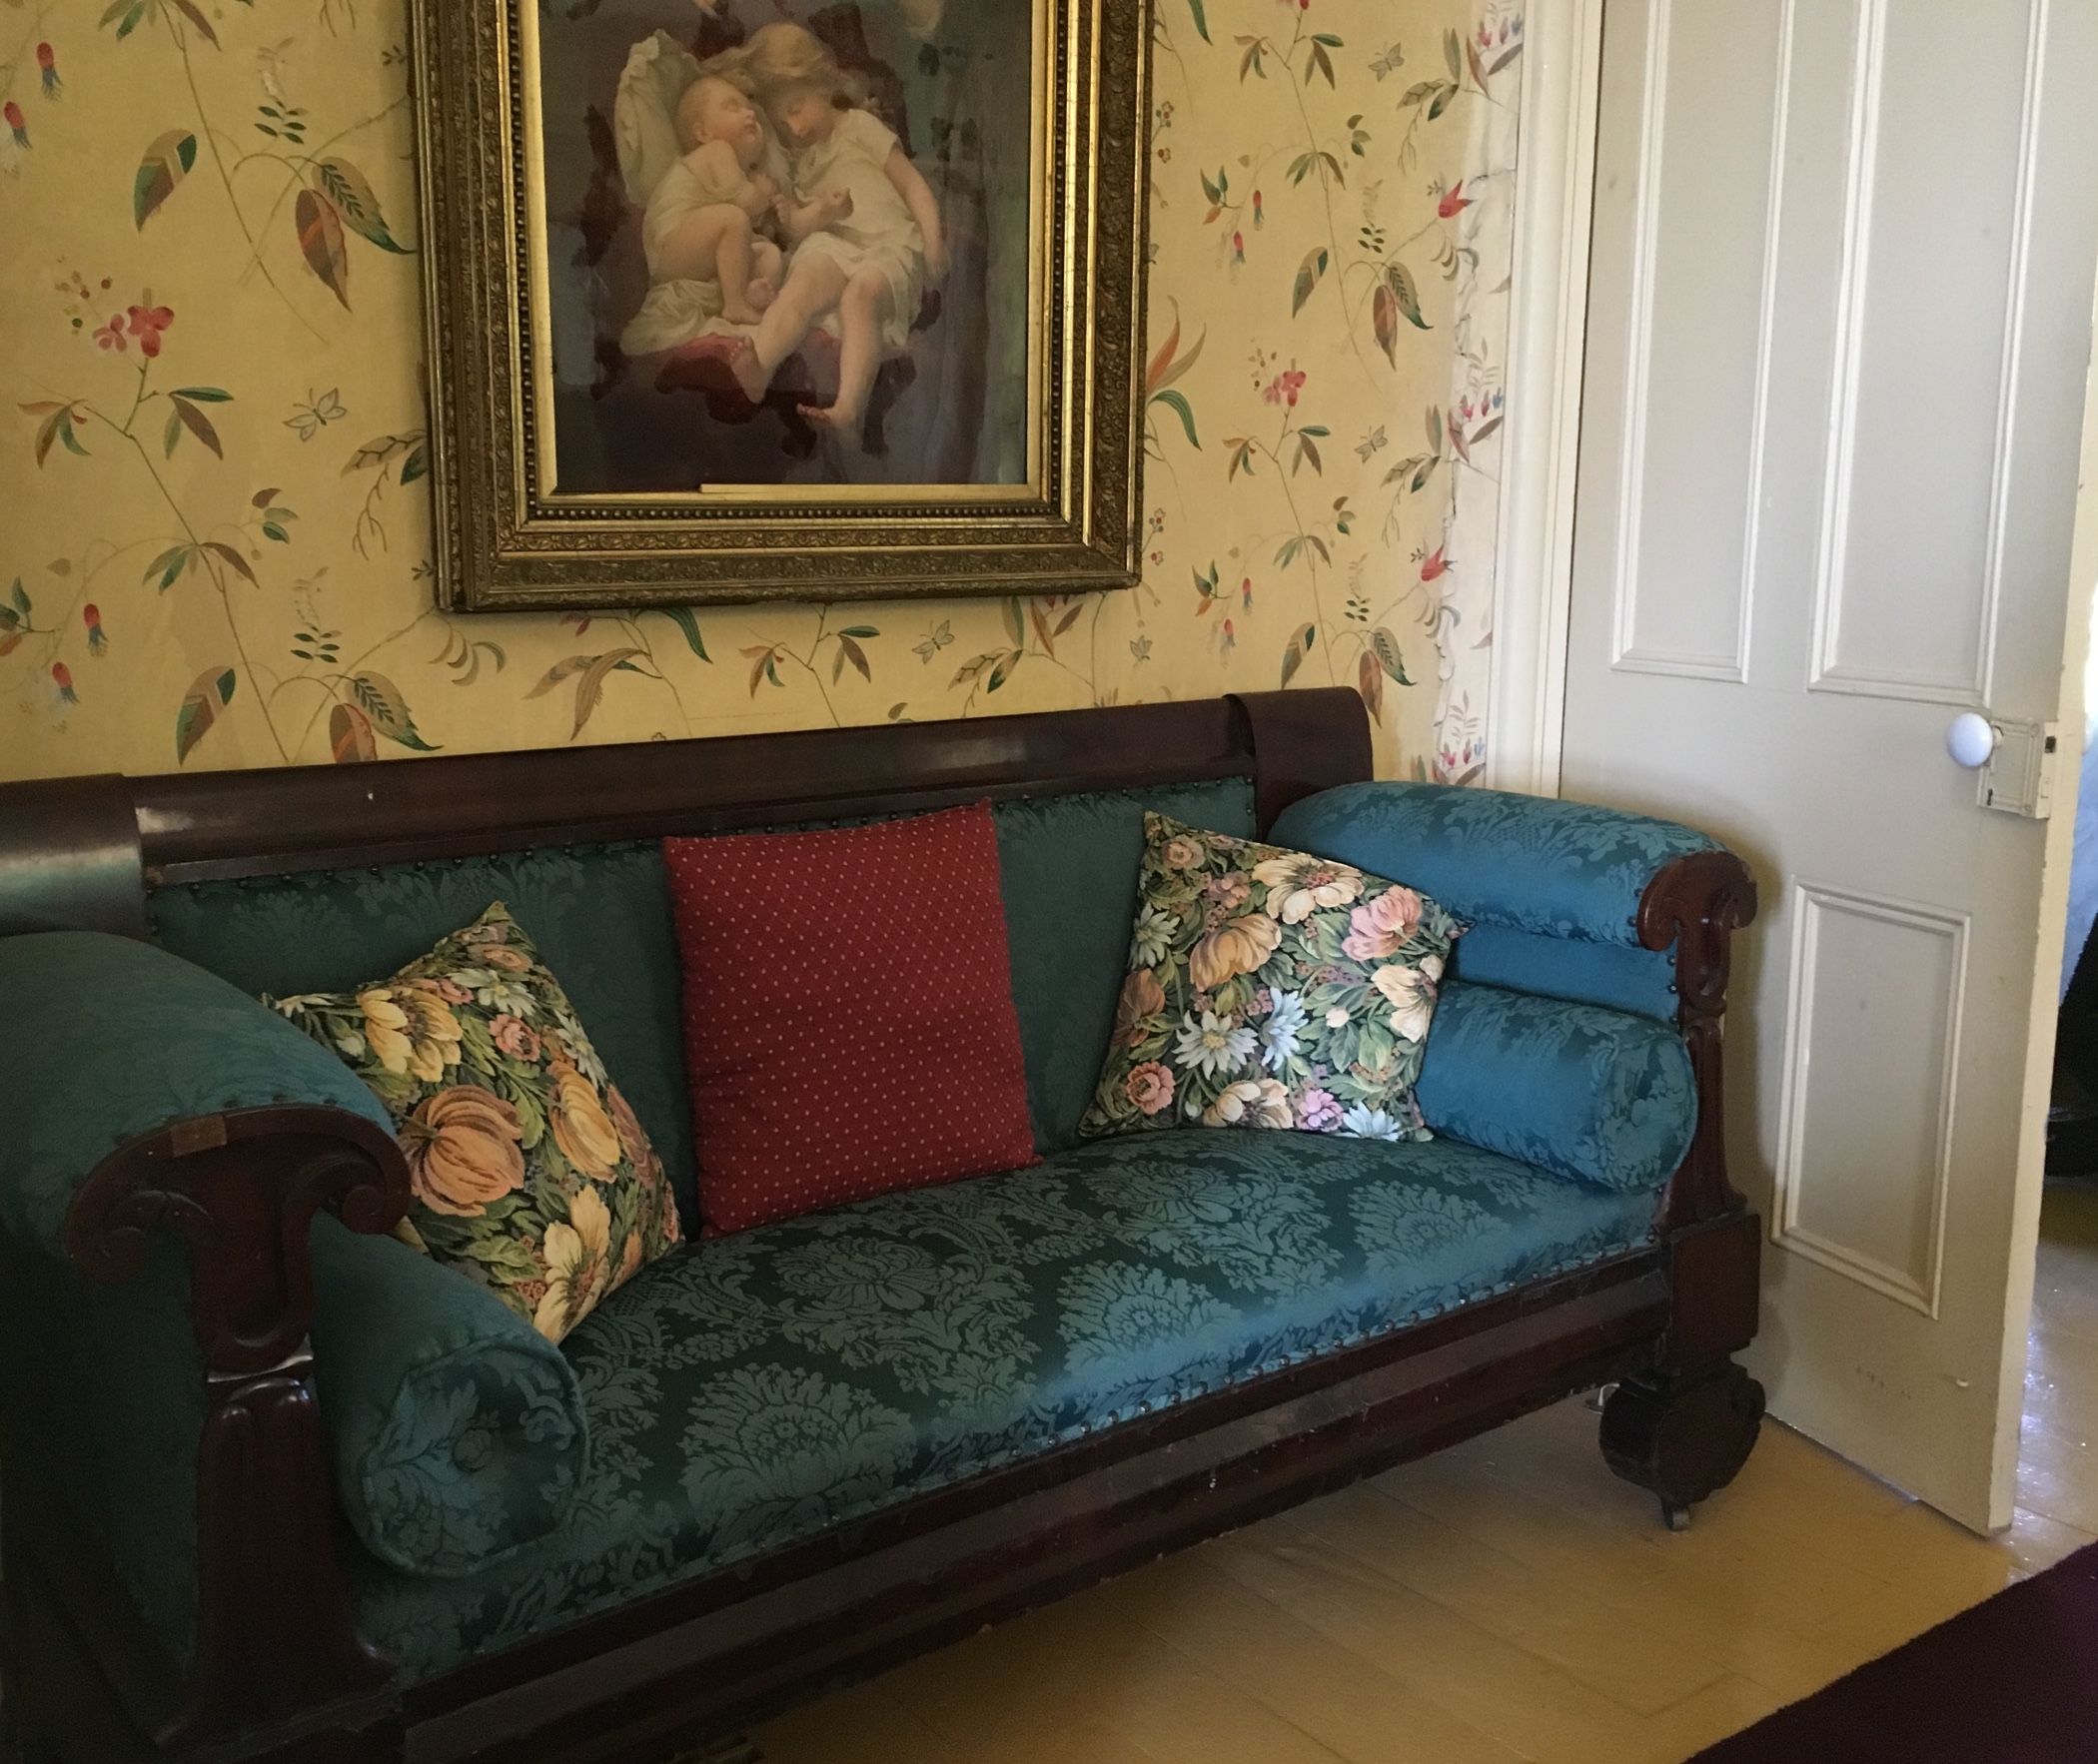 Une photo couleur d'un vieux sofa Chesterfield capitonné installé dans le coin d’une pièce derrière une porte, le dos contre un mur recouvert de papier peint sur lequel est accroché un tableau illustrant des chérubins. 